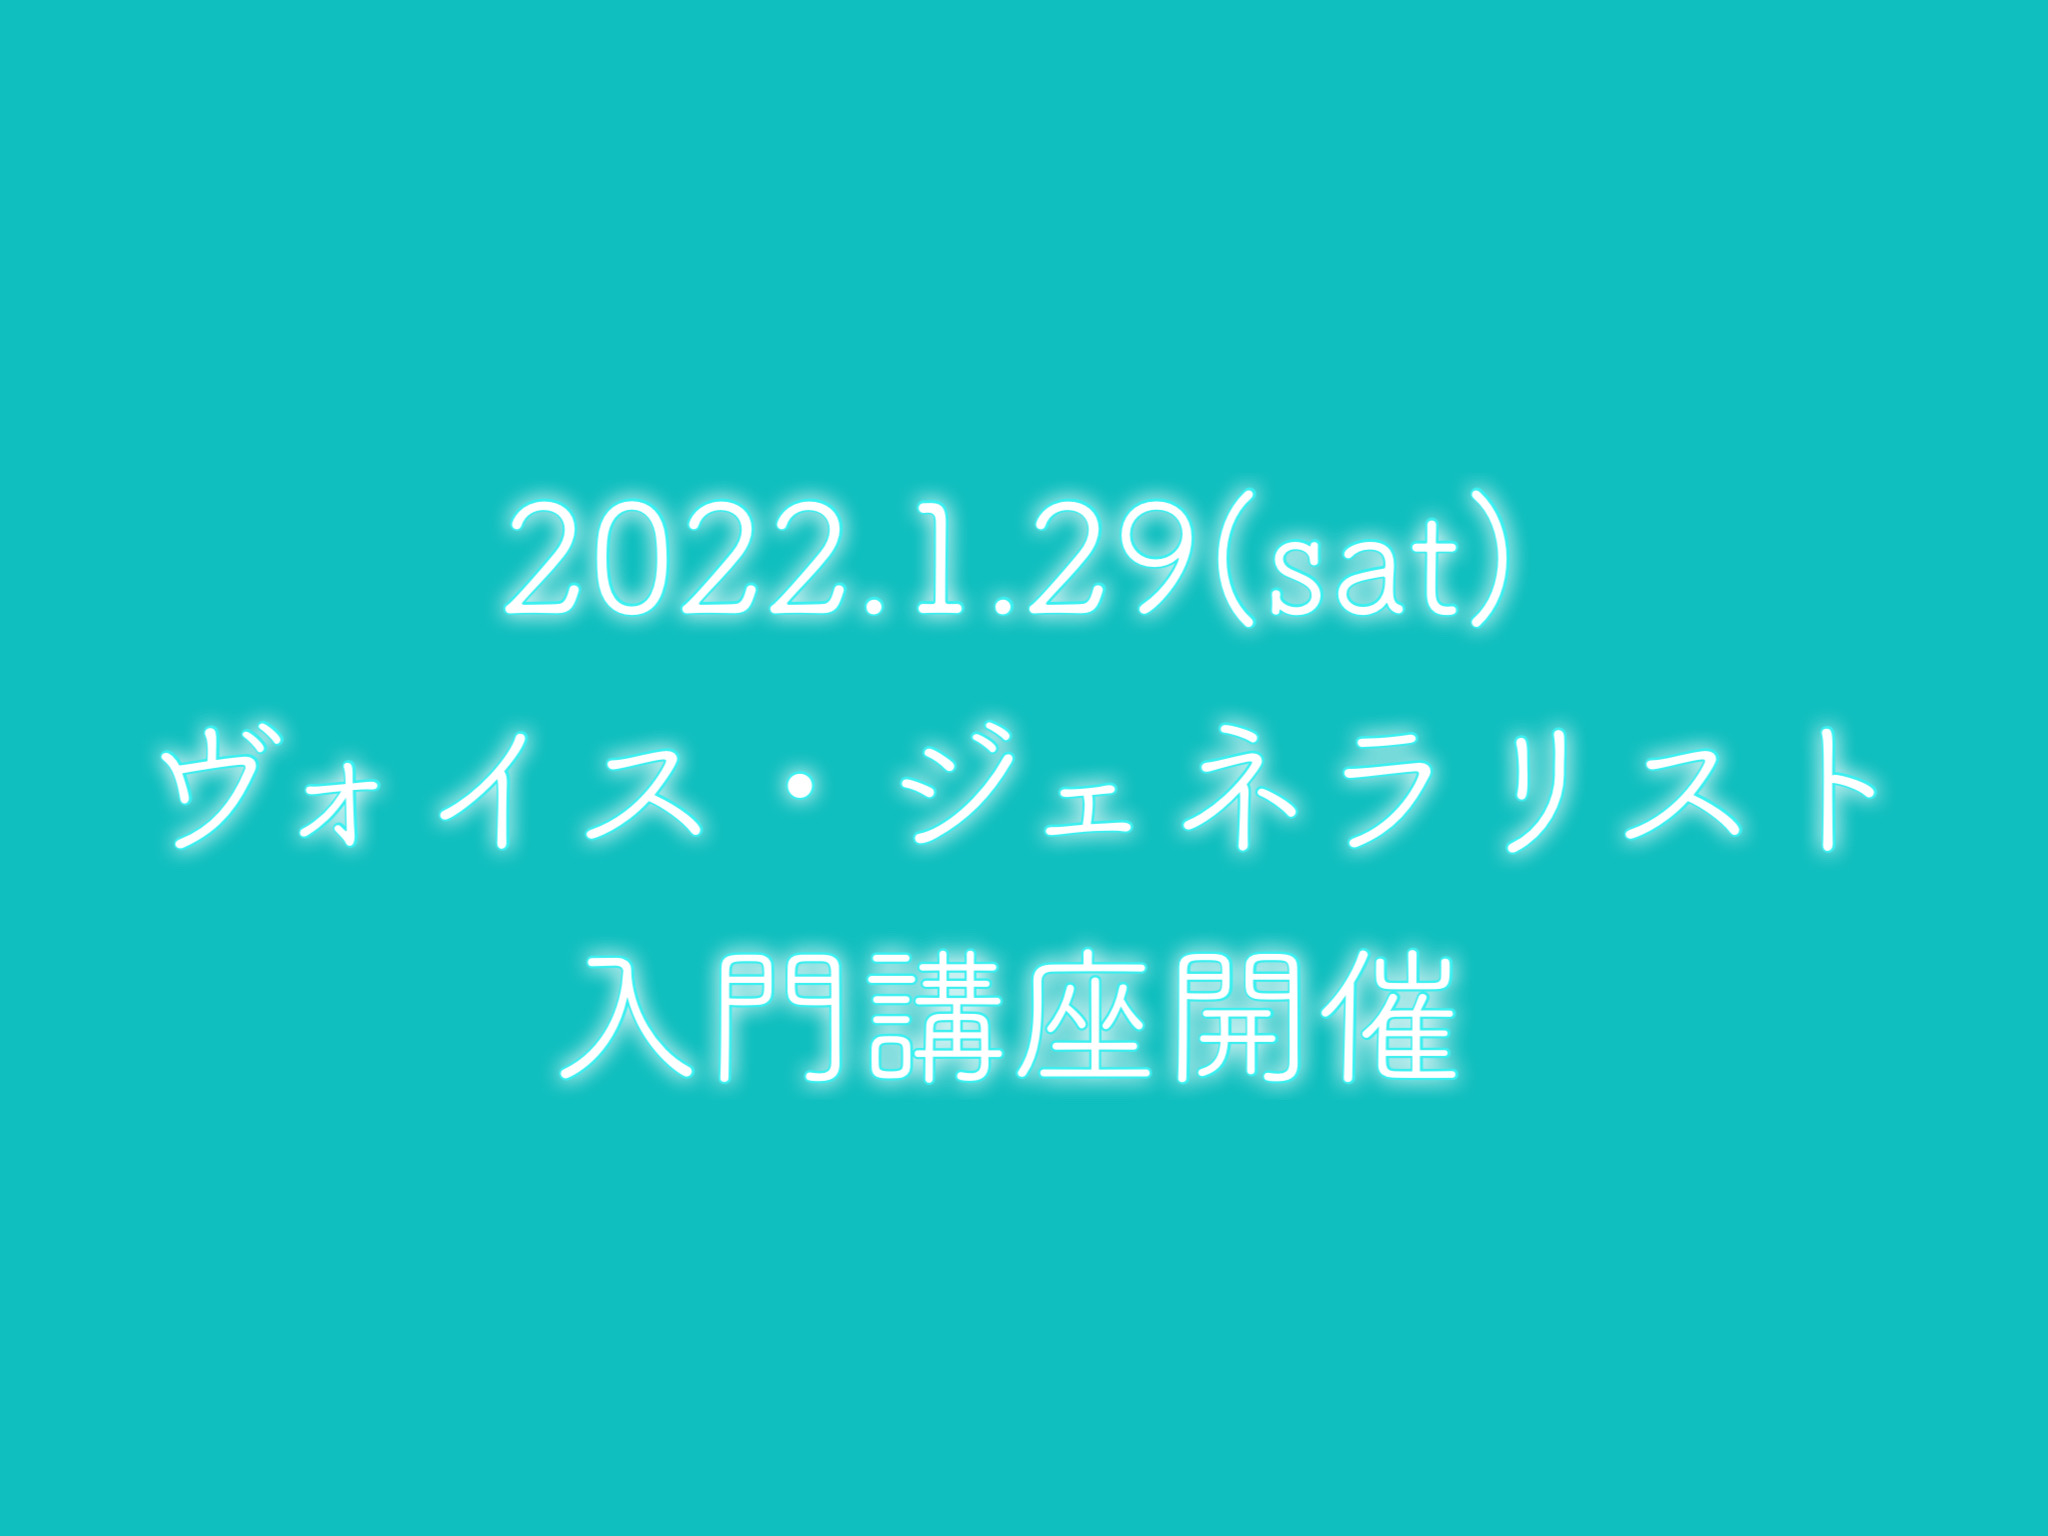 2022/1/29(土)ヴォイス・ジェネラリスト入門講座開催